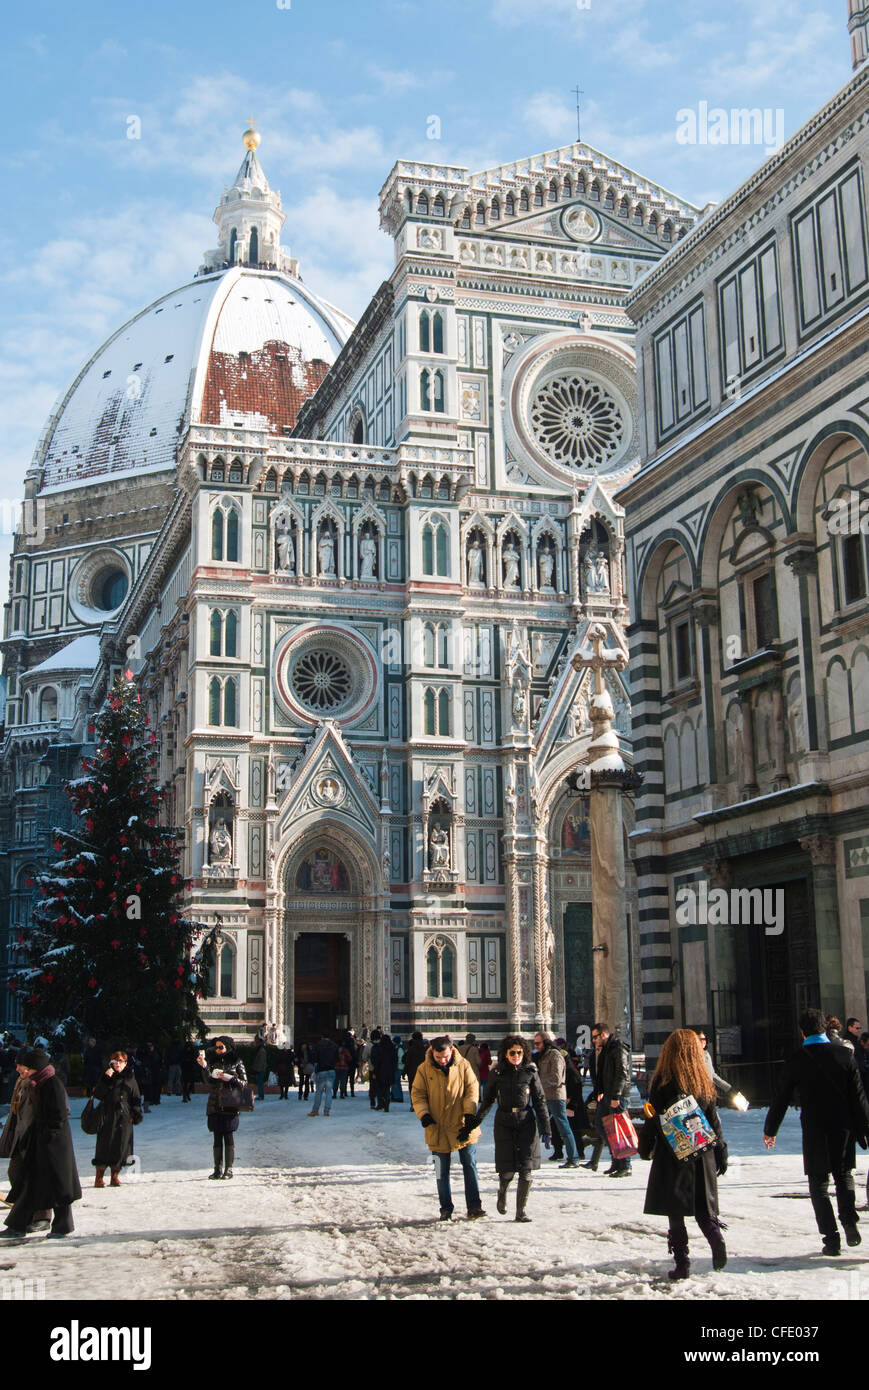 Le Duomo (cathédrale) avec la neige durant l'hiver, Florence (Firenze), UNESCO World Heritage Site, Toscane, Italie, Europe Banque D'Images